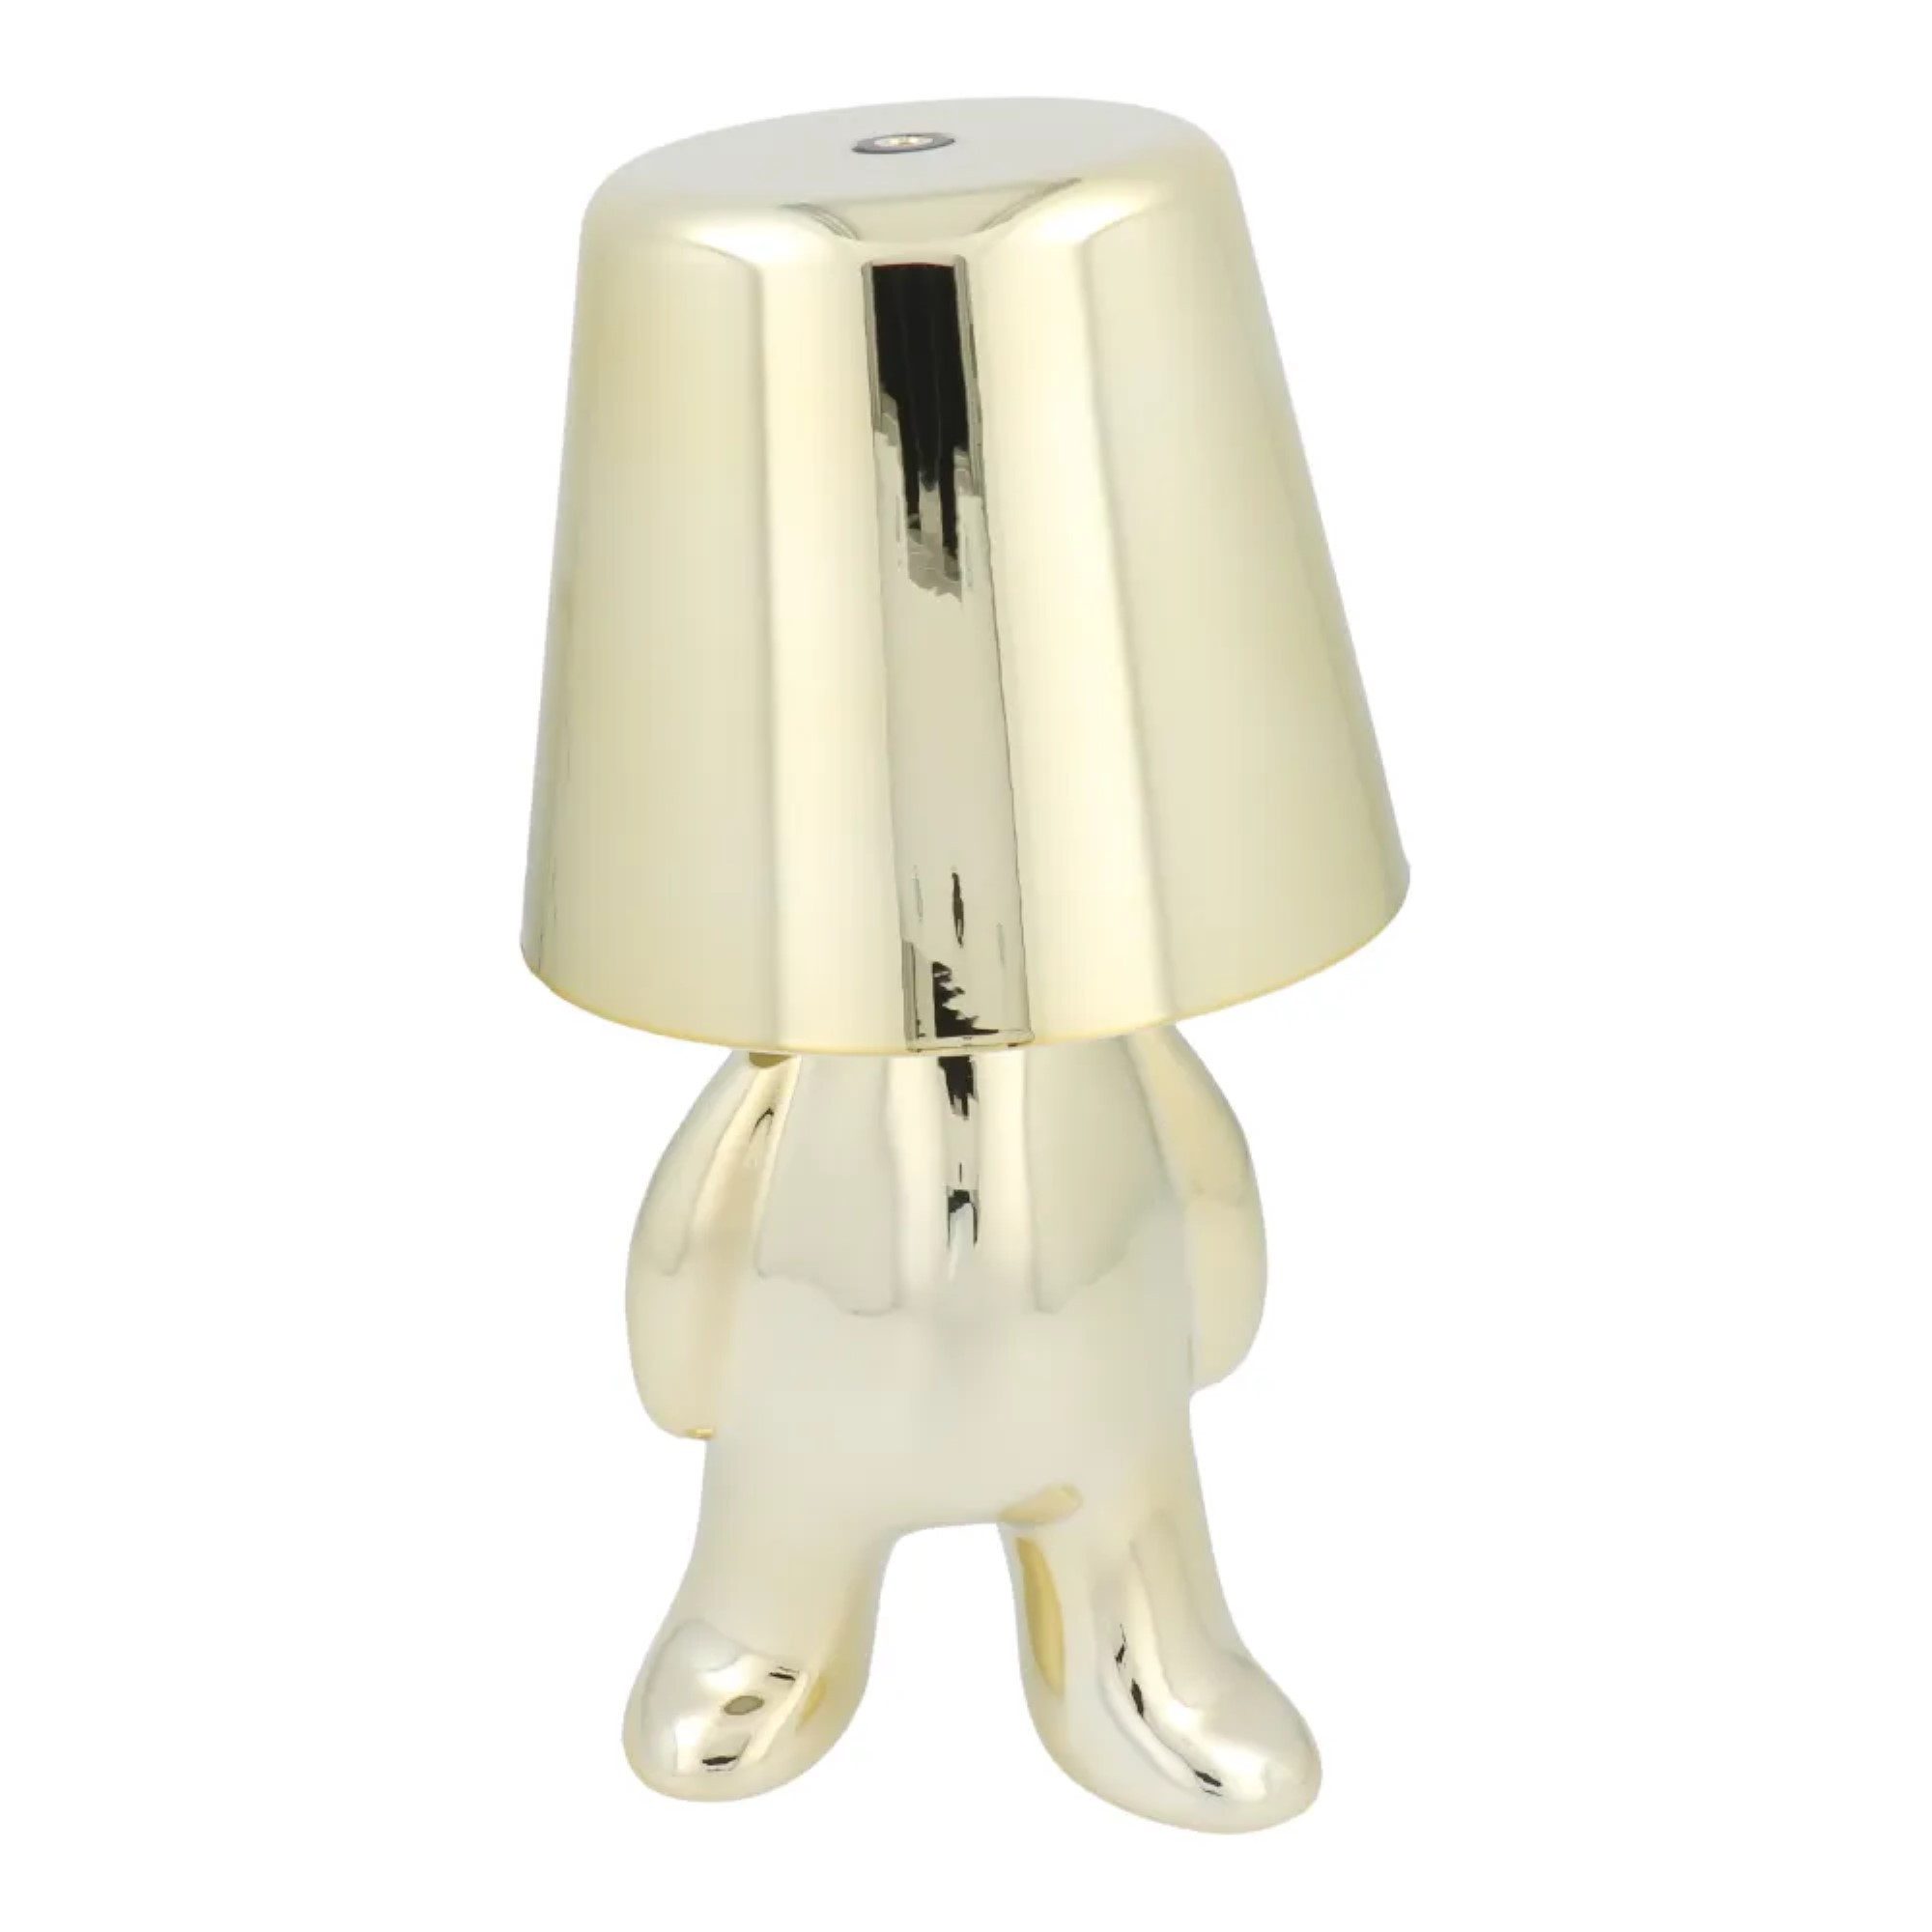 COFI 1453 Tischleuchte Tischlampe in Gold Nachttisch LED Beleuchtung stehender Mann